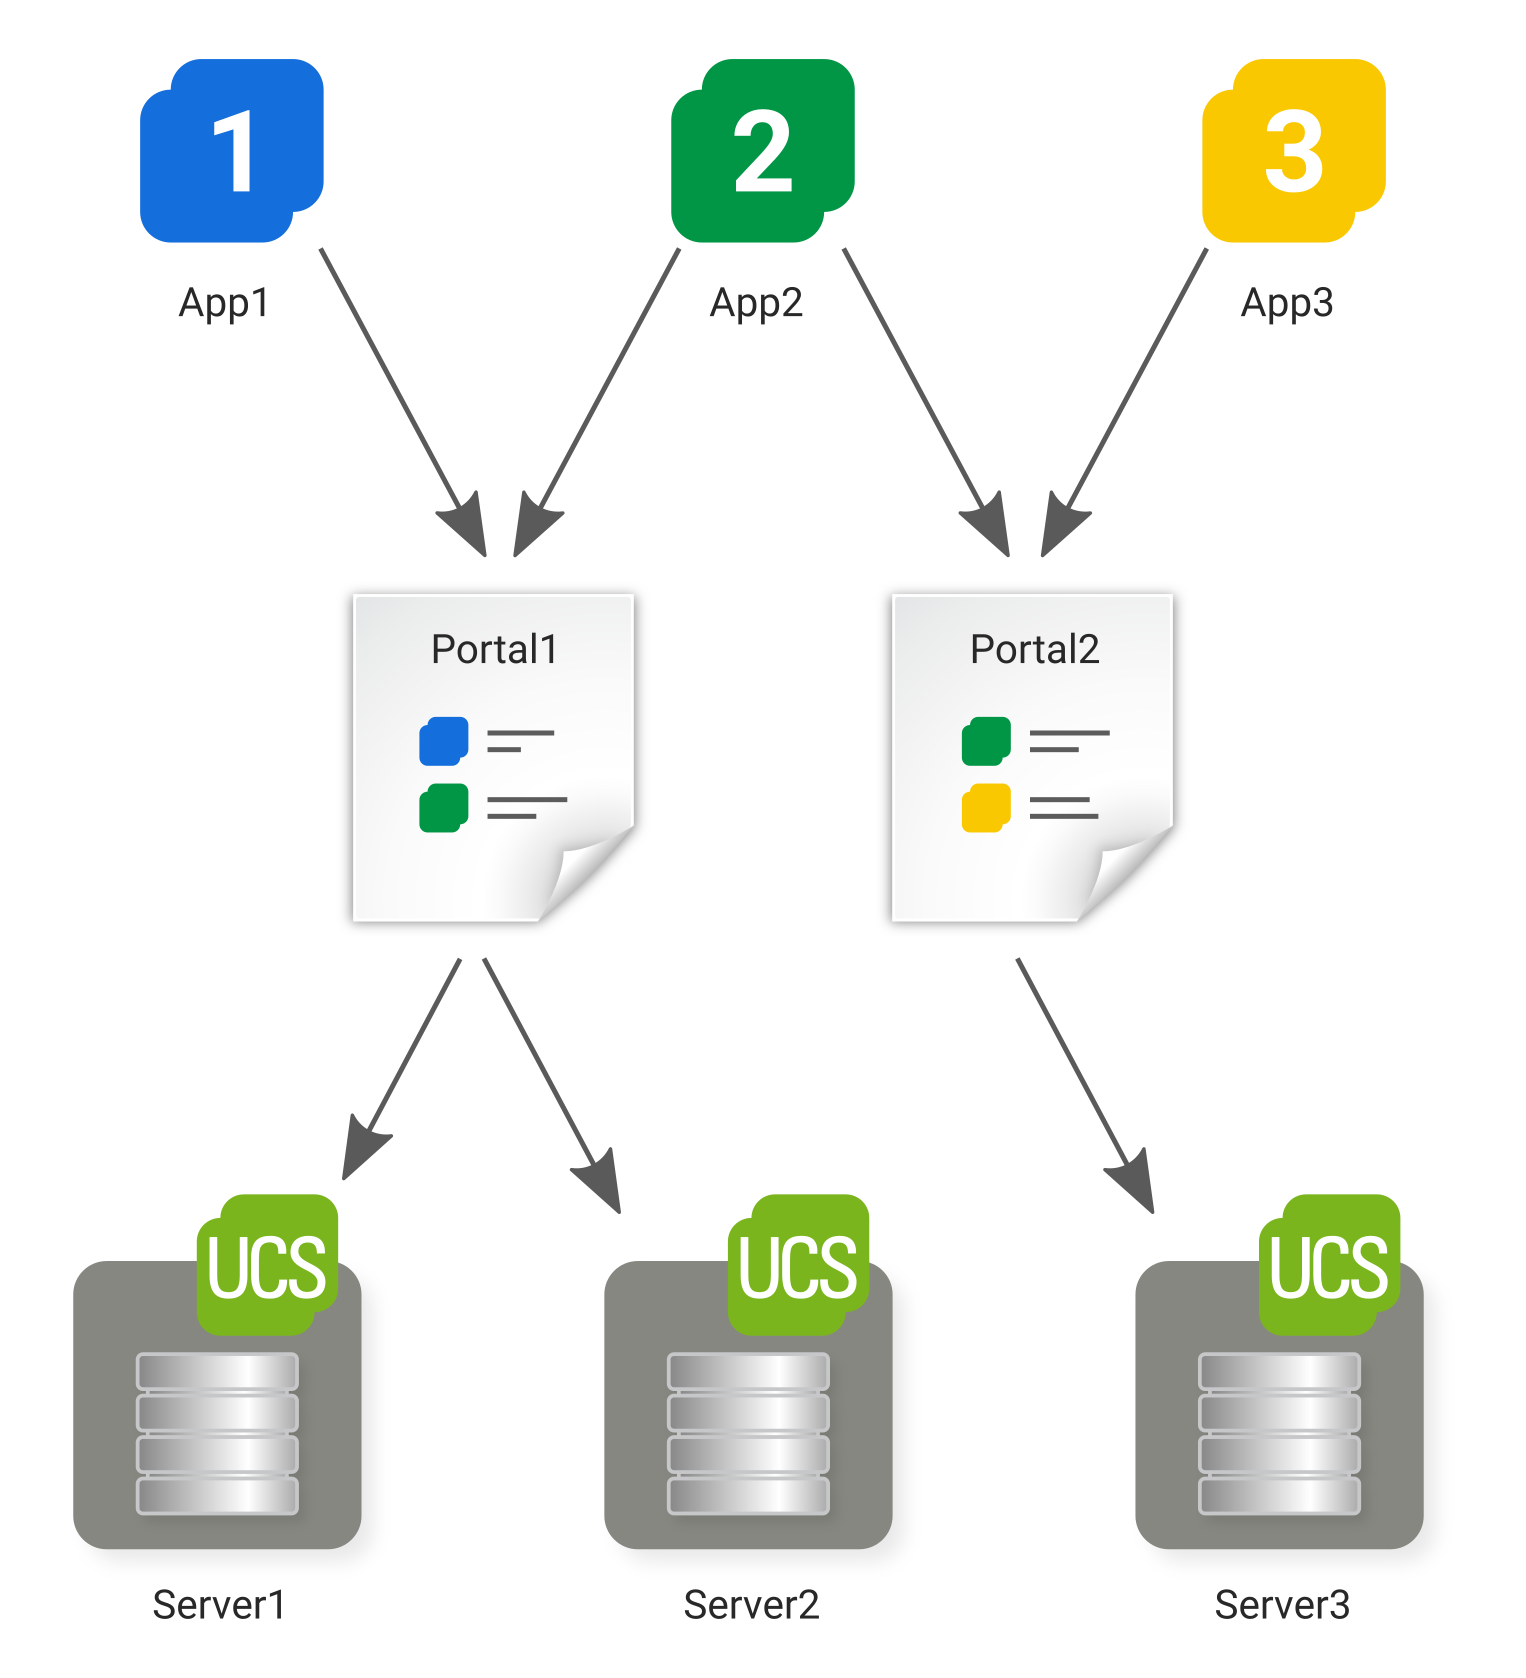 Schema des Portal-Konzepts in UCS: Portale können frei definiert und UCS-Systemen als Startseite zugewiesen werden; ein Verweis kann auf mehreren Portalen angezeigt werden.